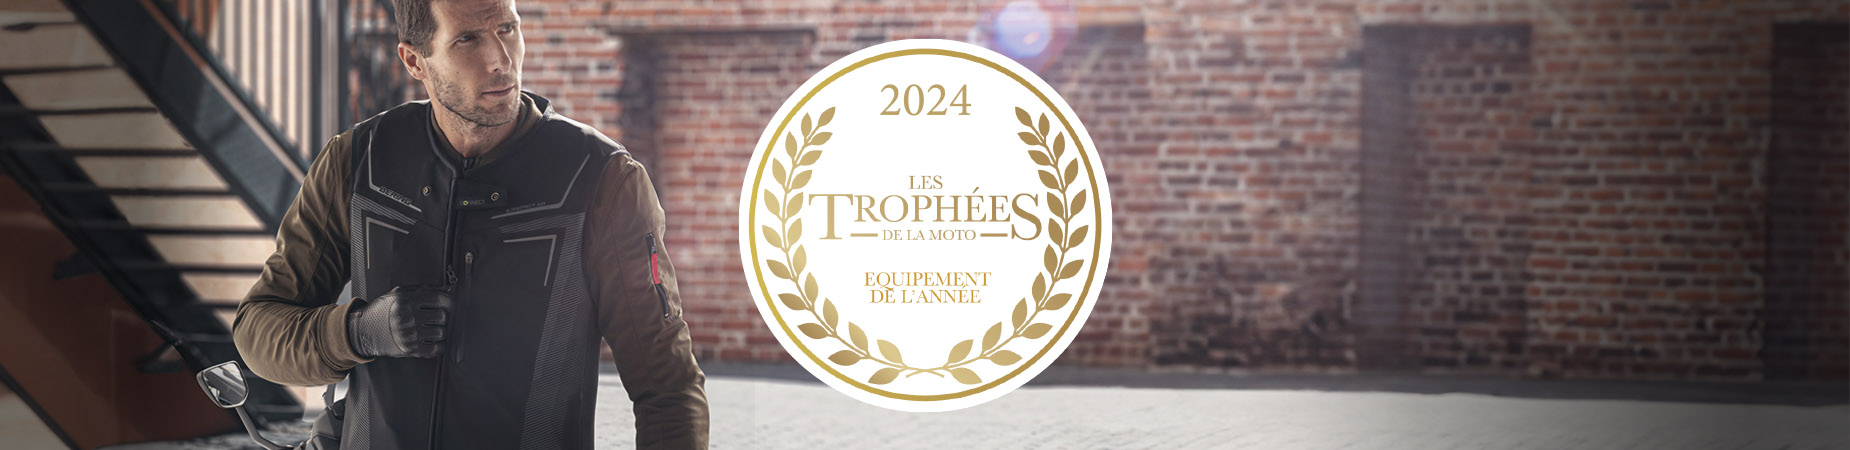 Innovazione E-Protect Apparecchiature aeree dell'anno Trophées de la Moto 2024 - Bering